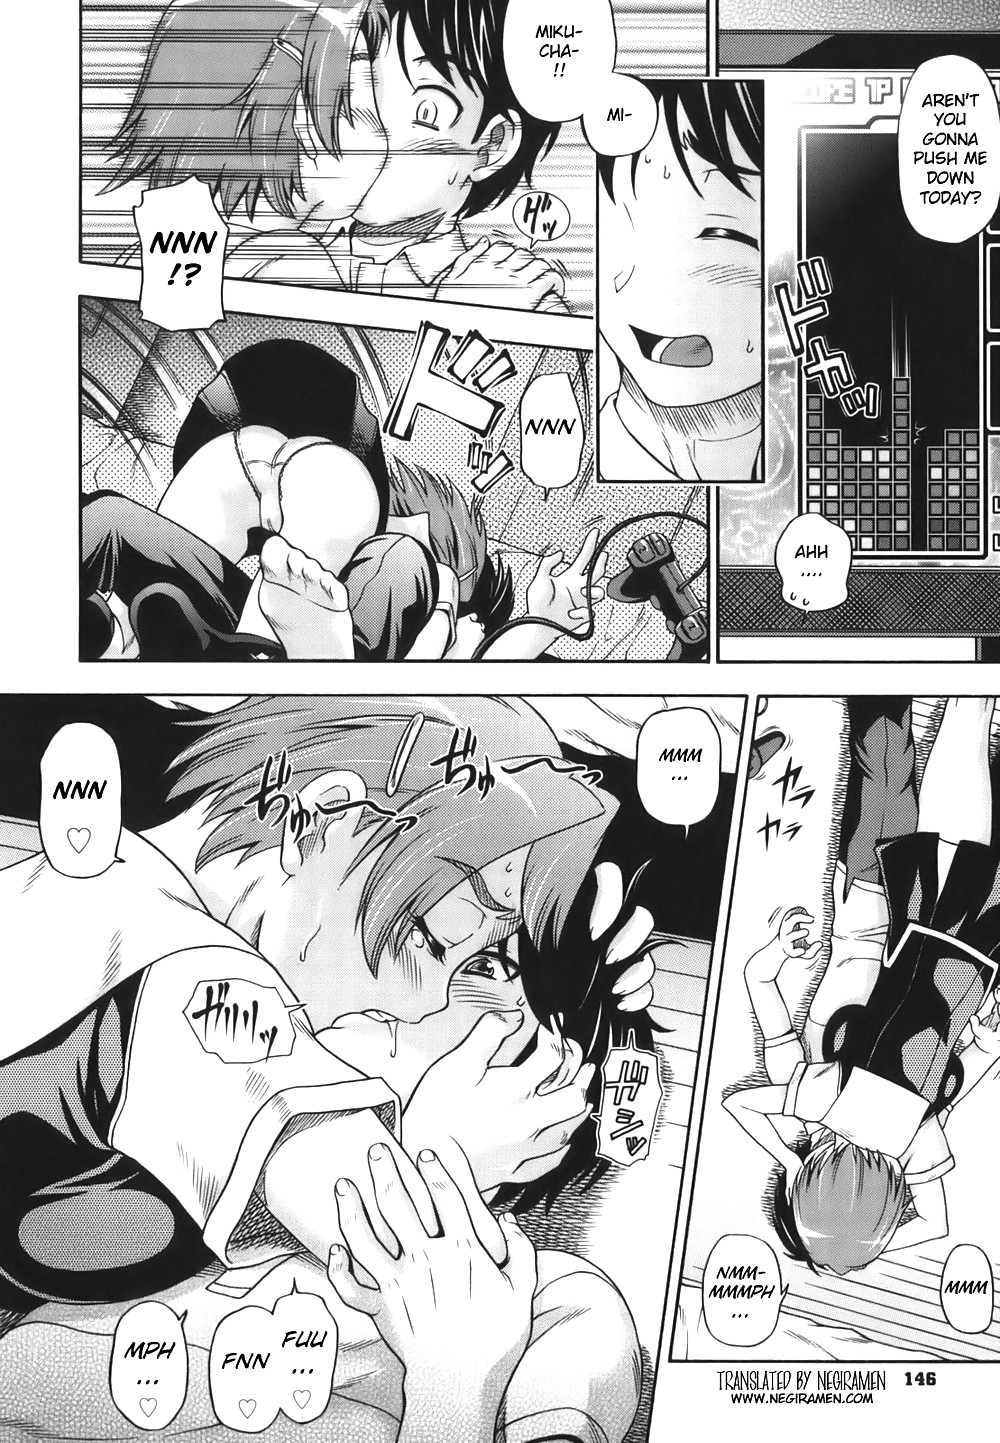 (comic hentai) fukudada obras eróticas #2
 #21081457